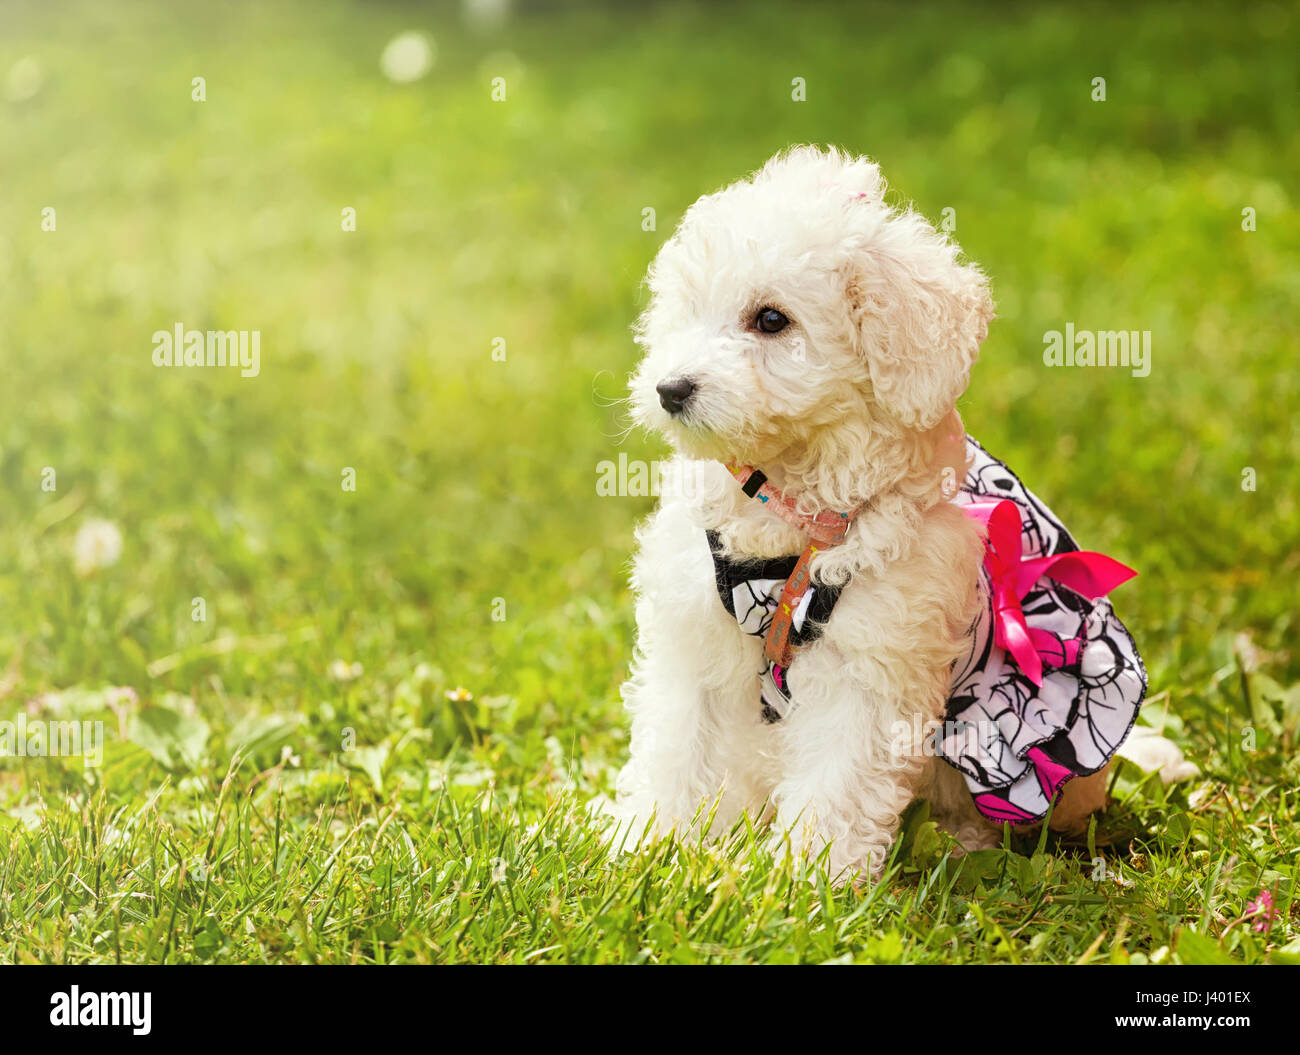 Niedlichen kleinen Welpen Pudelhund im grünen Rasen im Park. Stockfoto